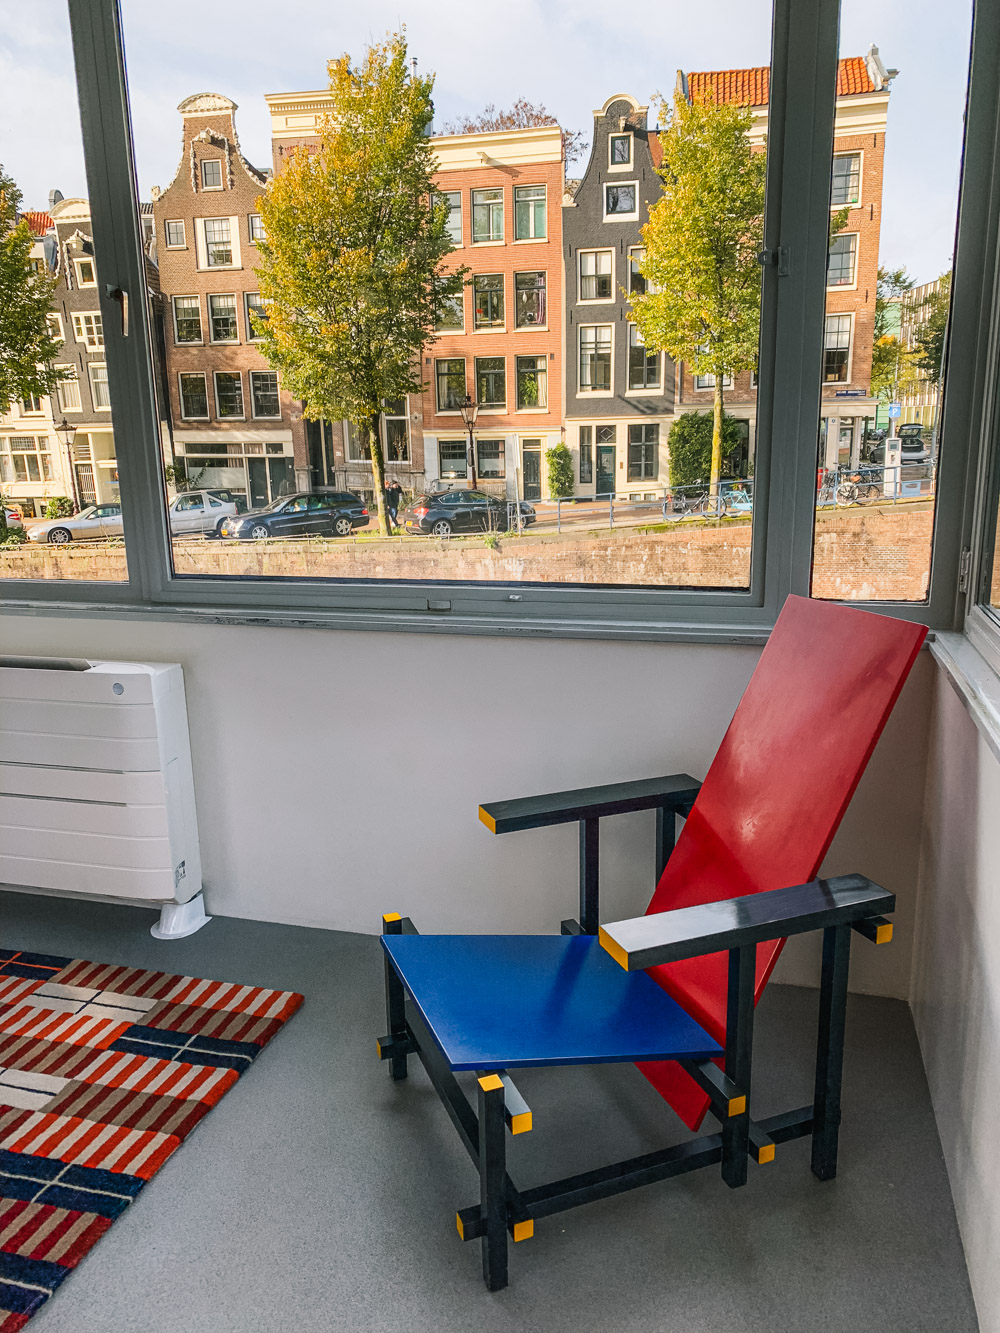 Dormir dans une maison de gardien de pont à Amsterdam dans le style Rietveld